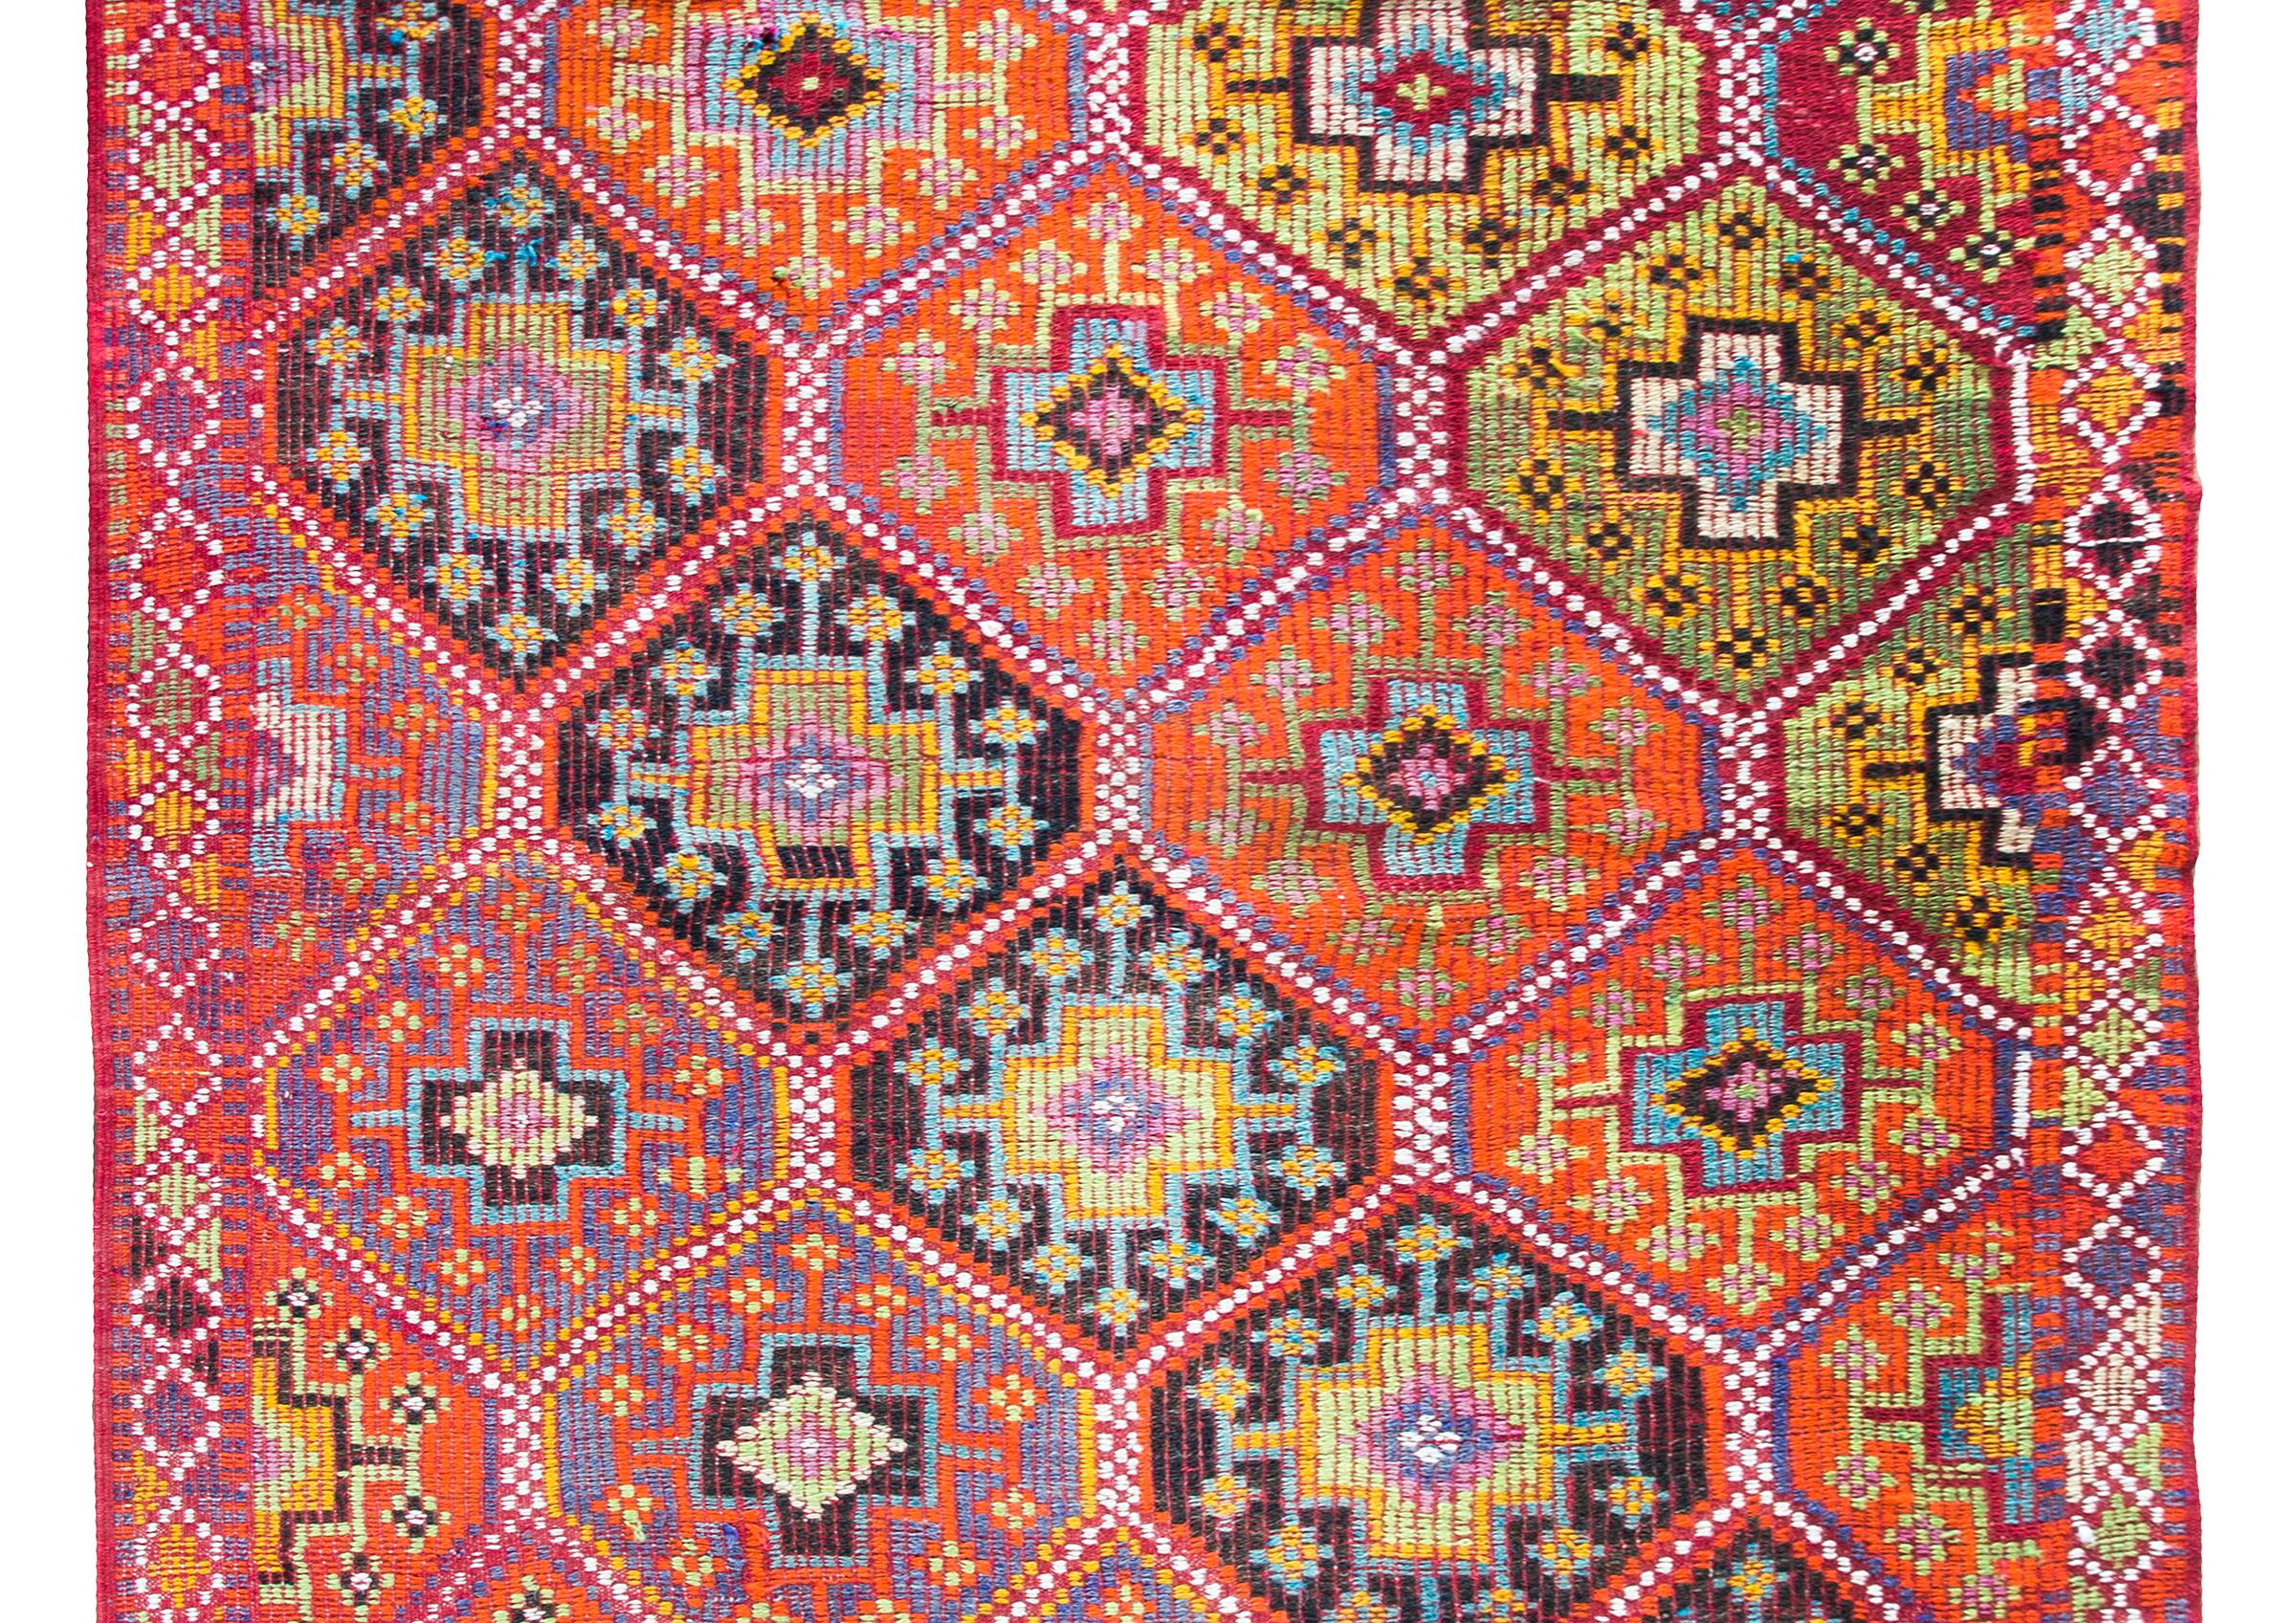 Chic et audacieux, ce tapis turc de Konya du milieu du XXe siècle présente un magnifique motif de médaillons en losange avec des fleurs stylisées organisées en bandes diagonales et tissées dans des tons orange, or, indigos clairs et foncés, blancs,